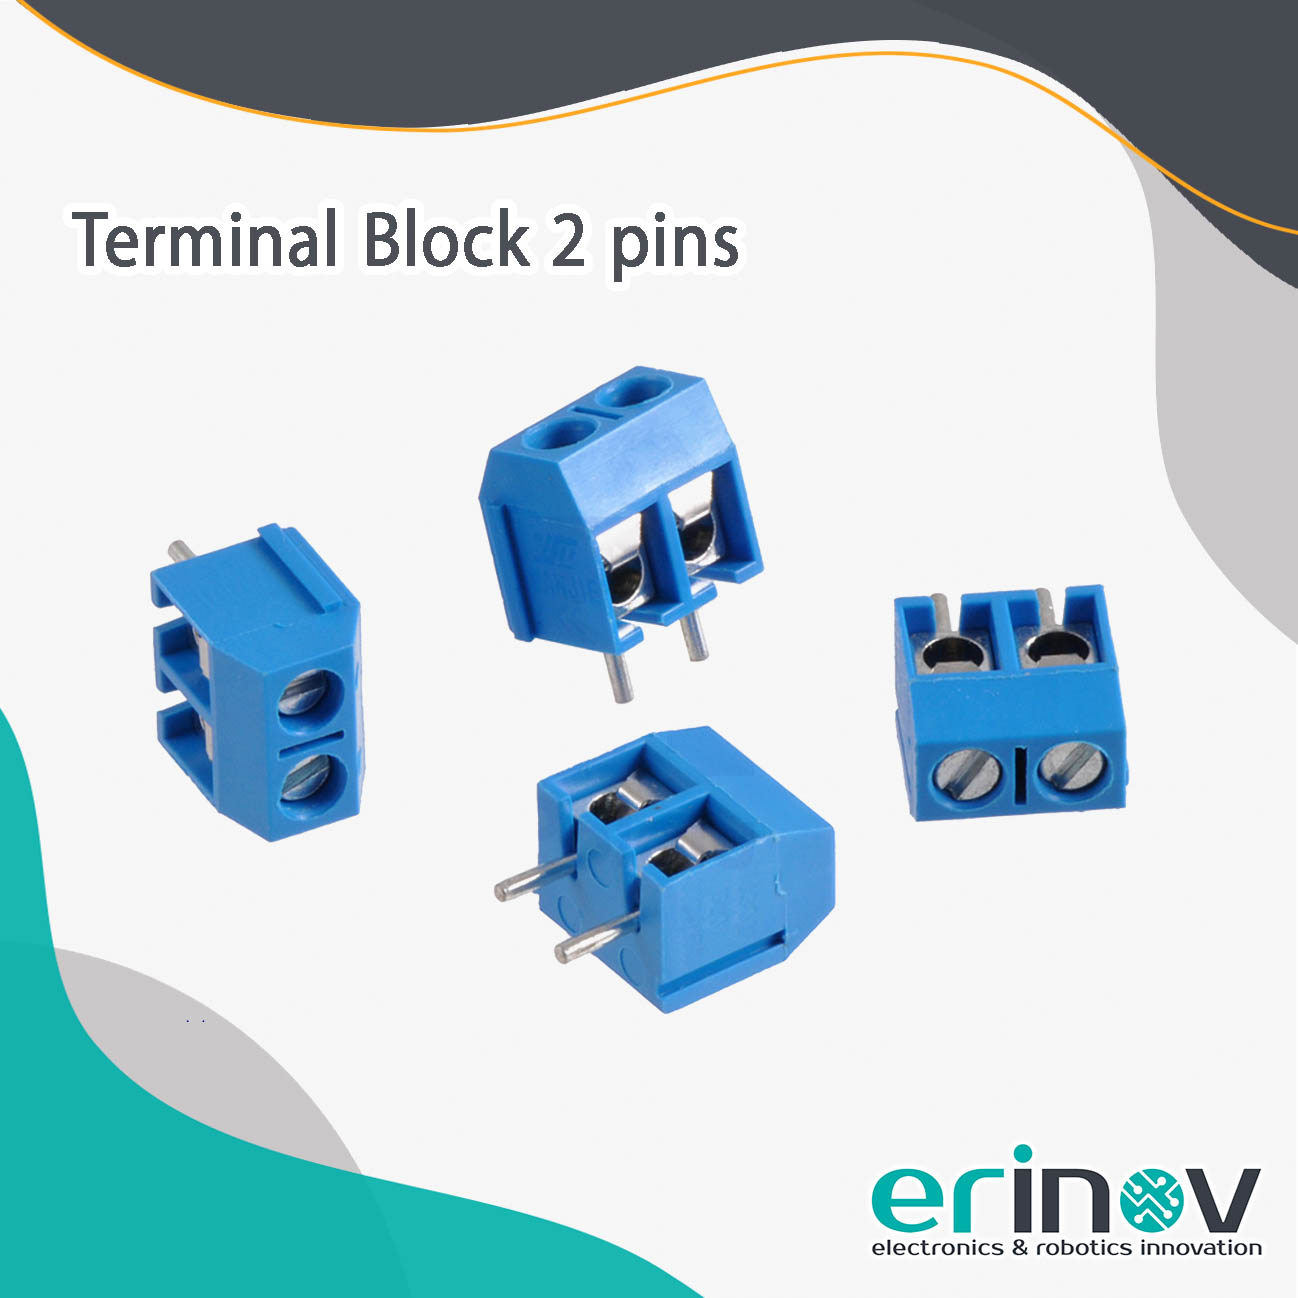 Terminal Block 2 pins - Erinov